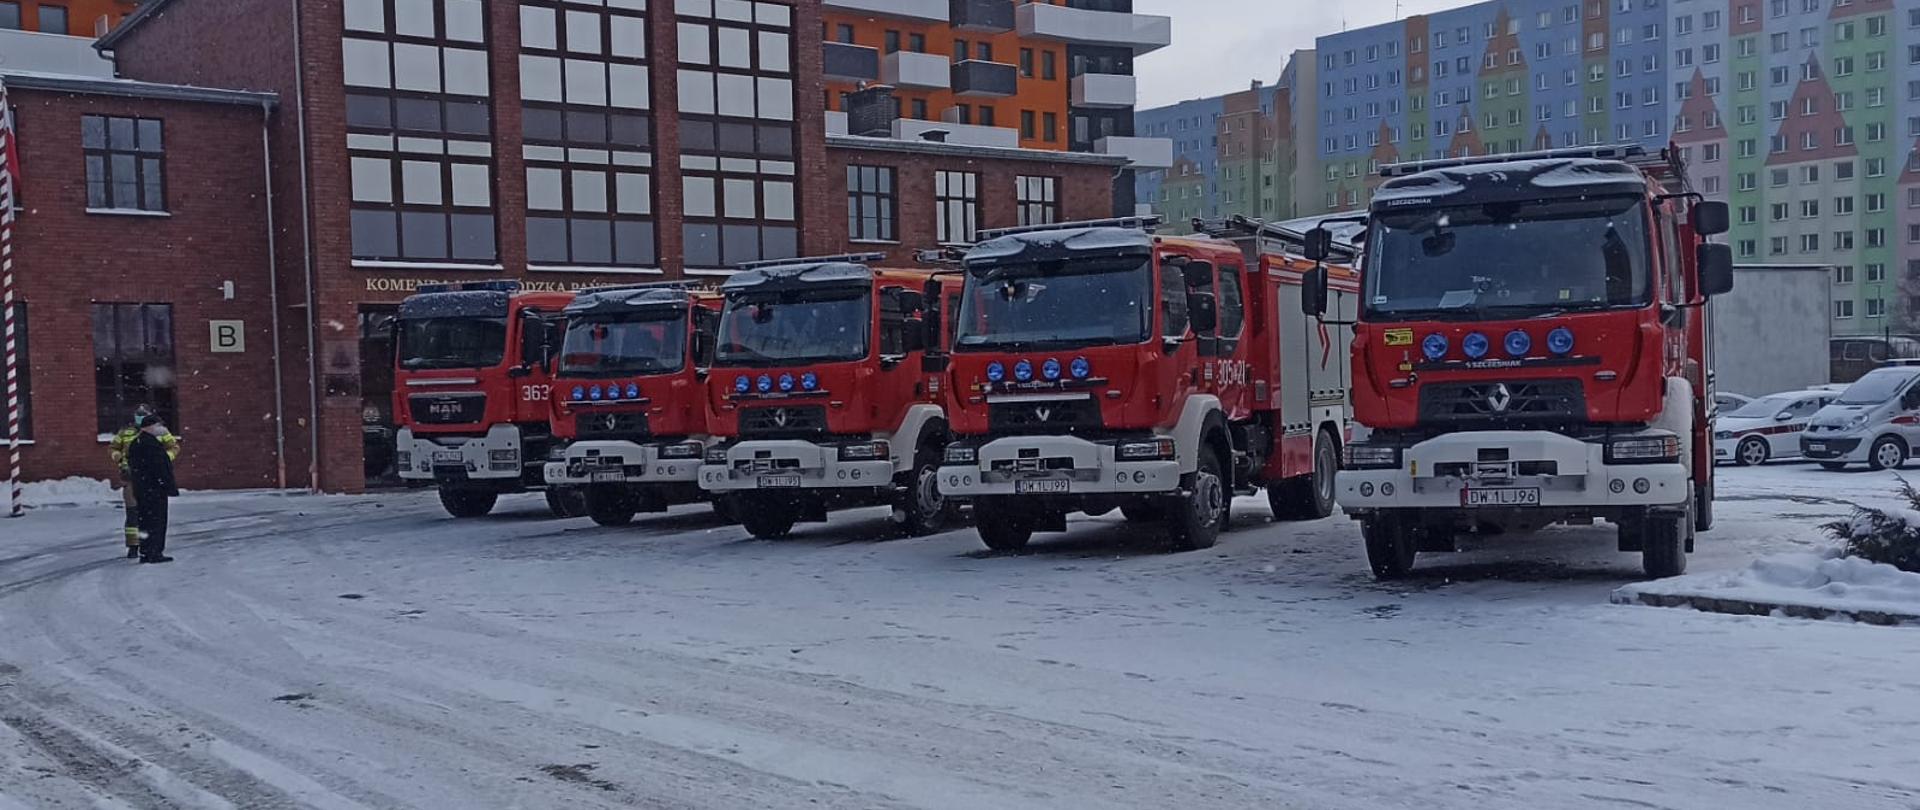 Po środku kadru stoi pięć czerwonych samochodów ciężarowych Państwowej Straży Pożarnej auta stoją na ośnieżonym placu w tle widać wielokolorowe budynki mieszkalne. Po lewej stronie widoczny masz na którym powiewa flaga Polski.